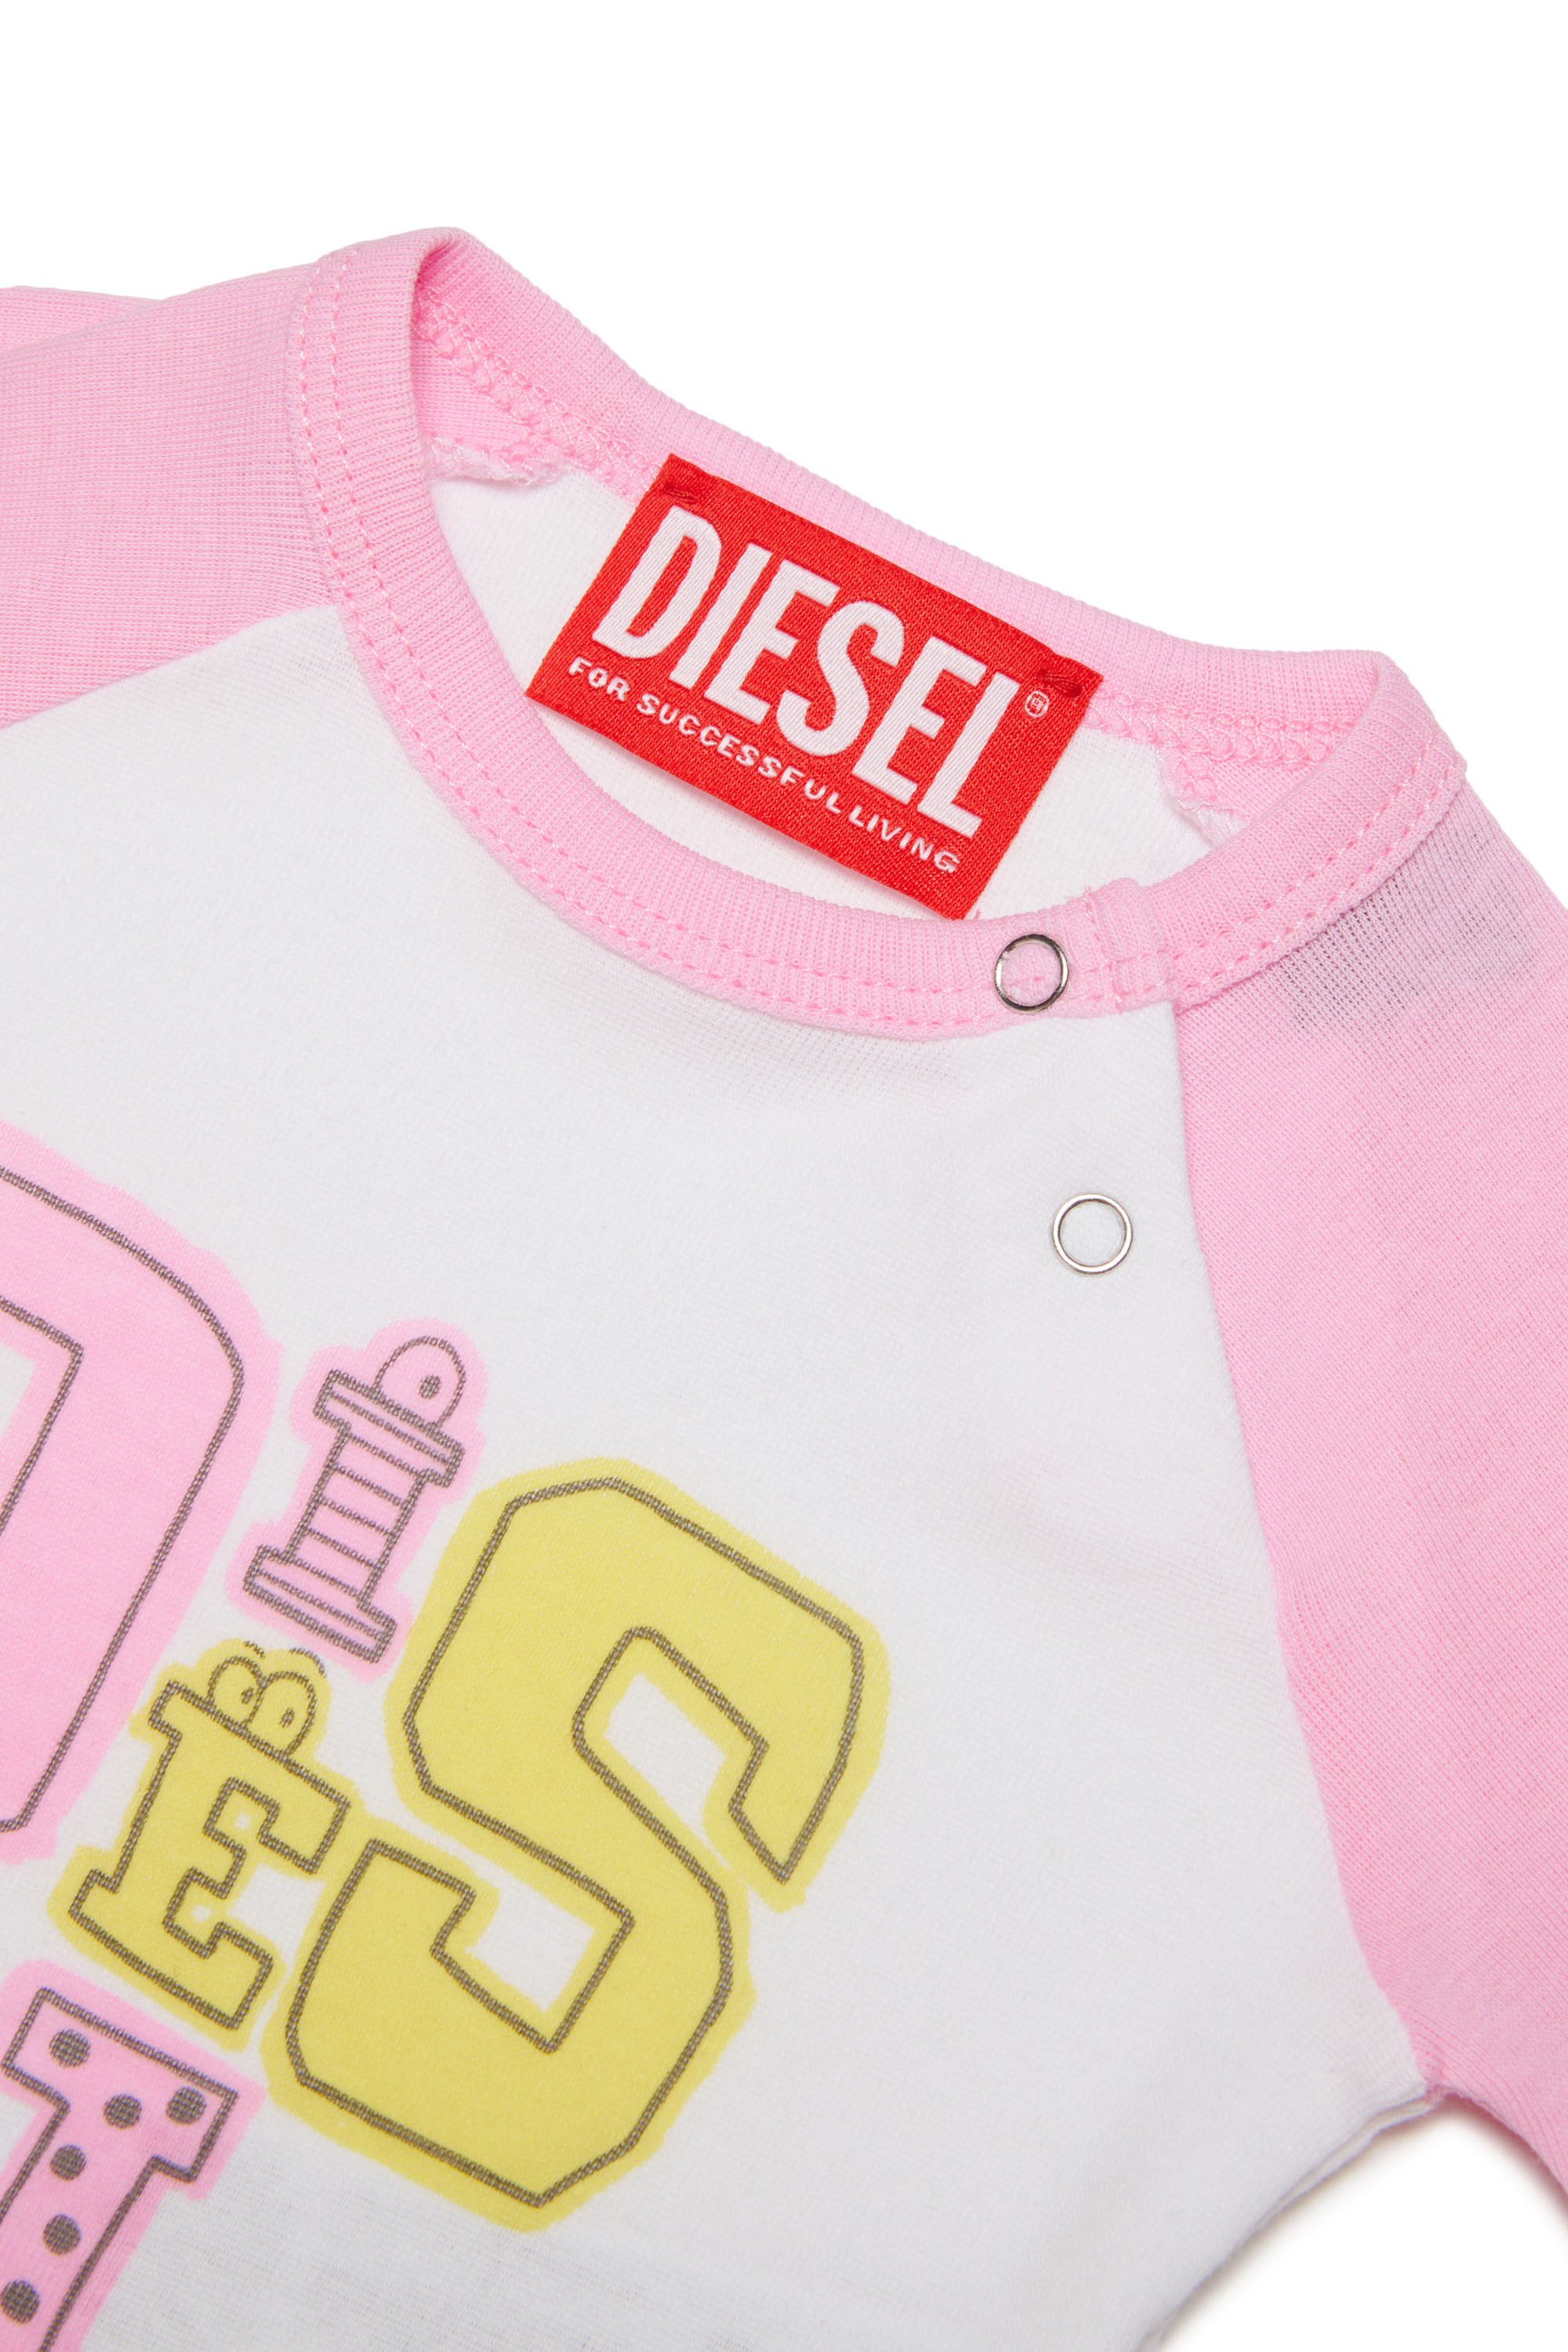 Diesel - UMPLA-NB, Pink - Image 3